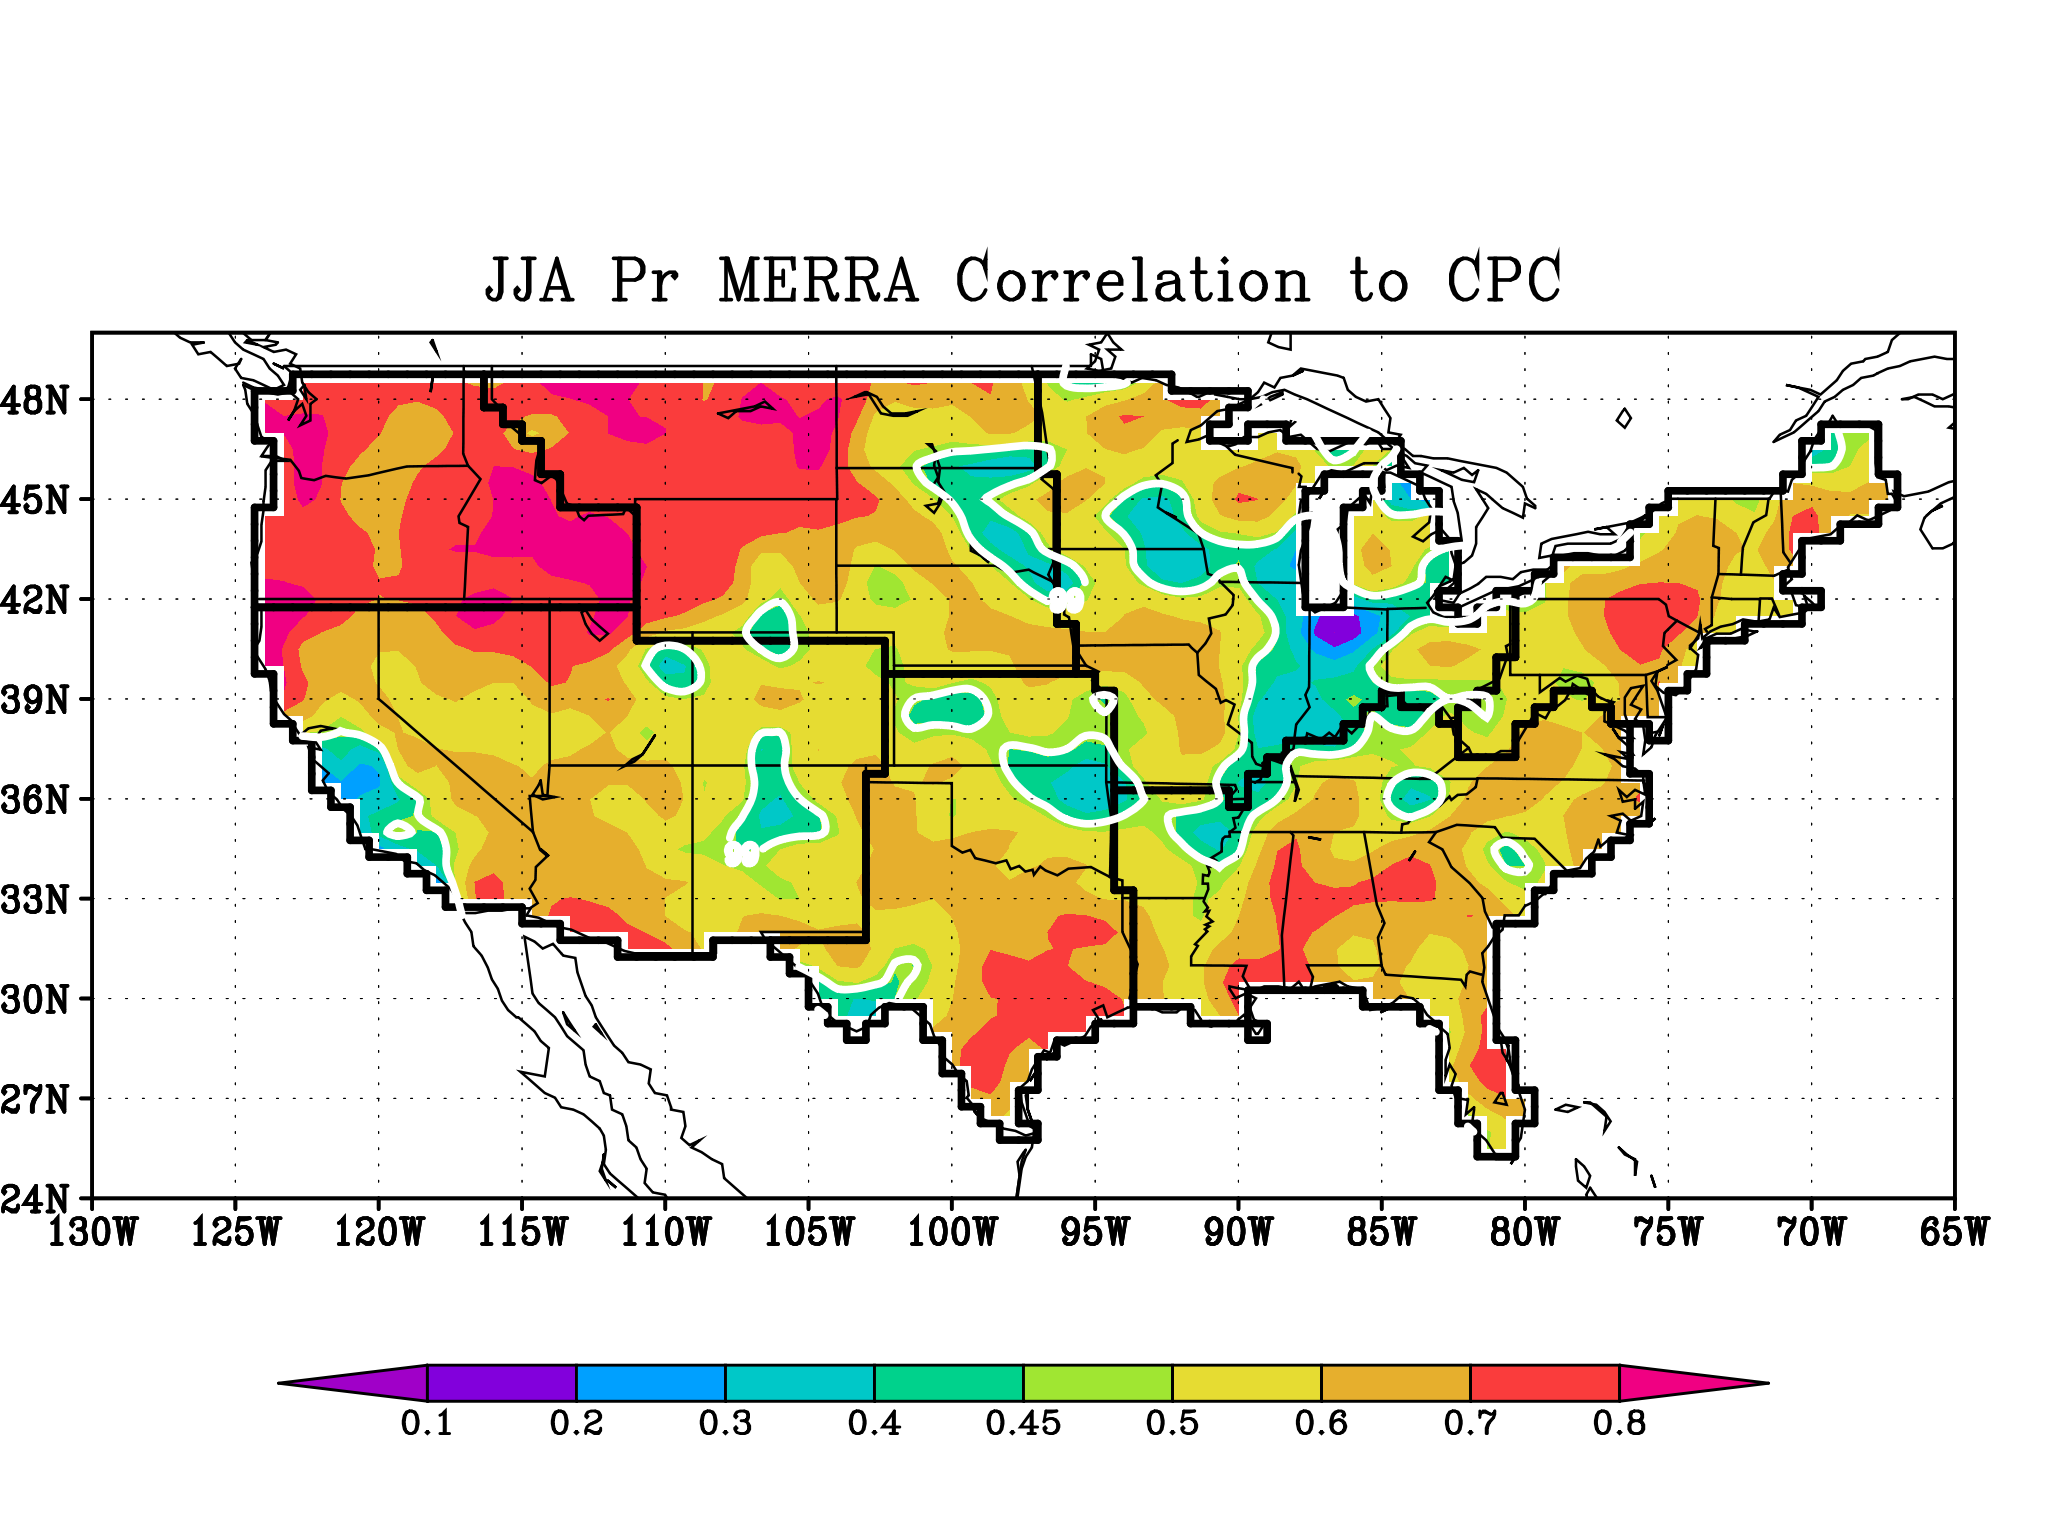 MERRA JJA Seasonal Precip correlated to CPC Gauge Observations